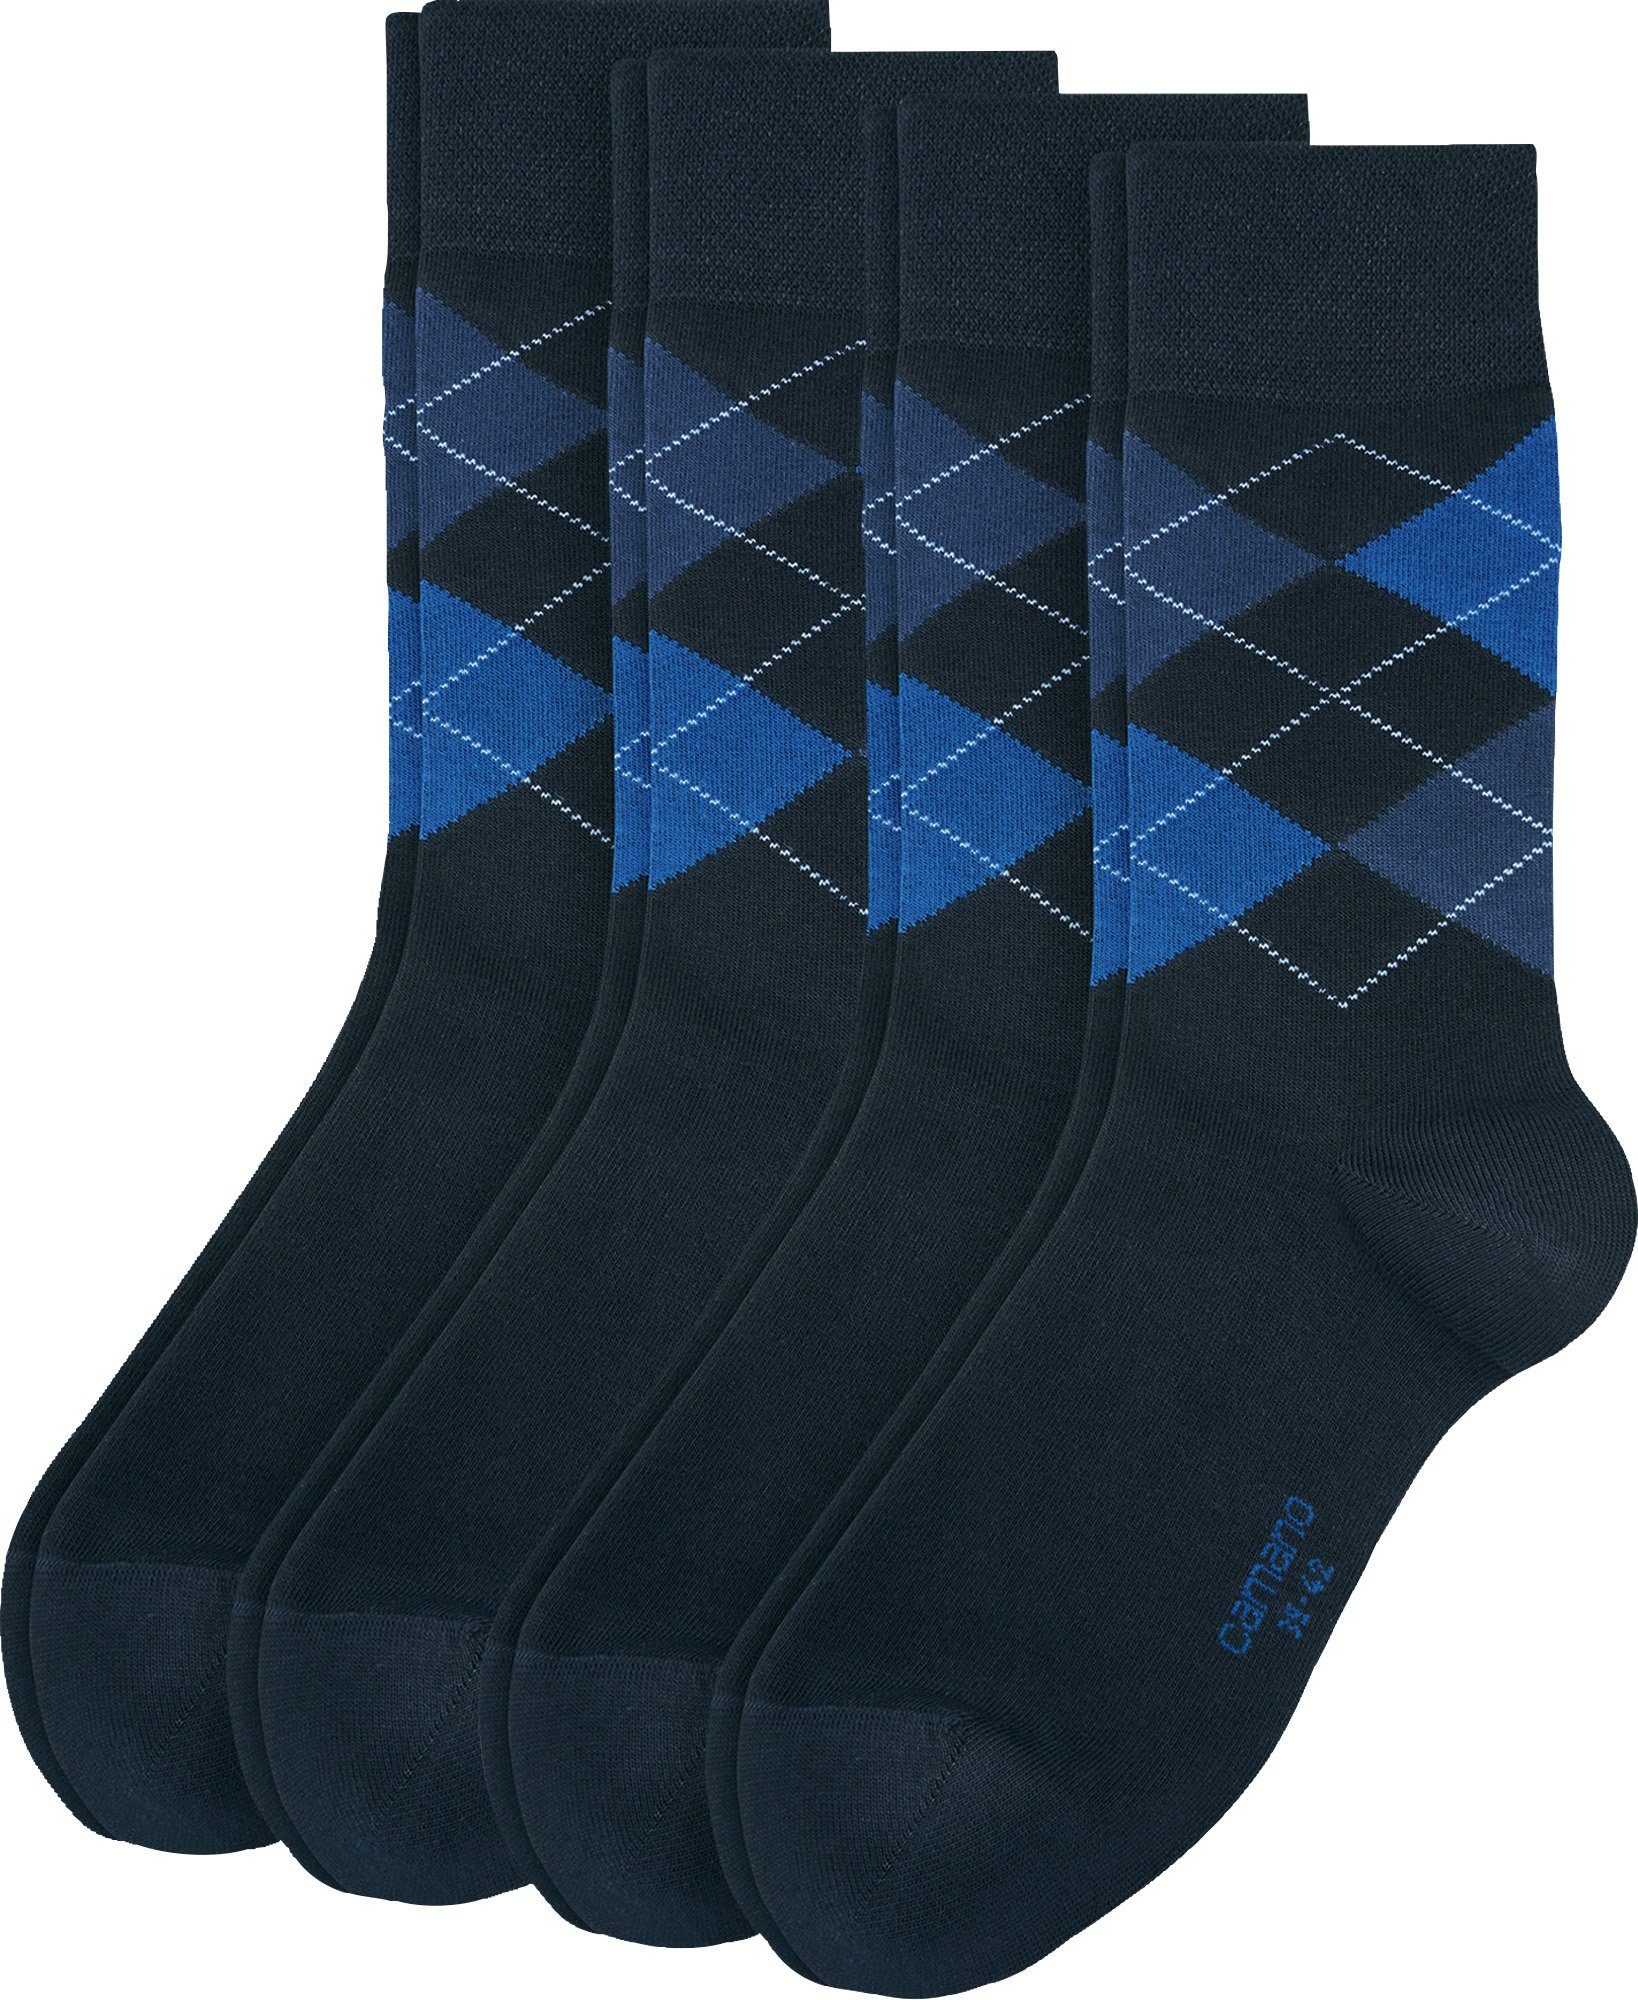 4 Camano gemustert blau Herren-Socken Paar Socken